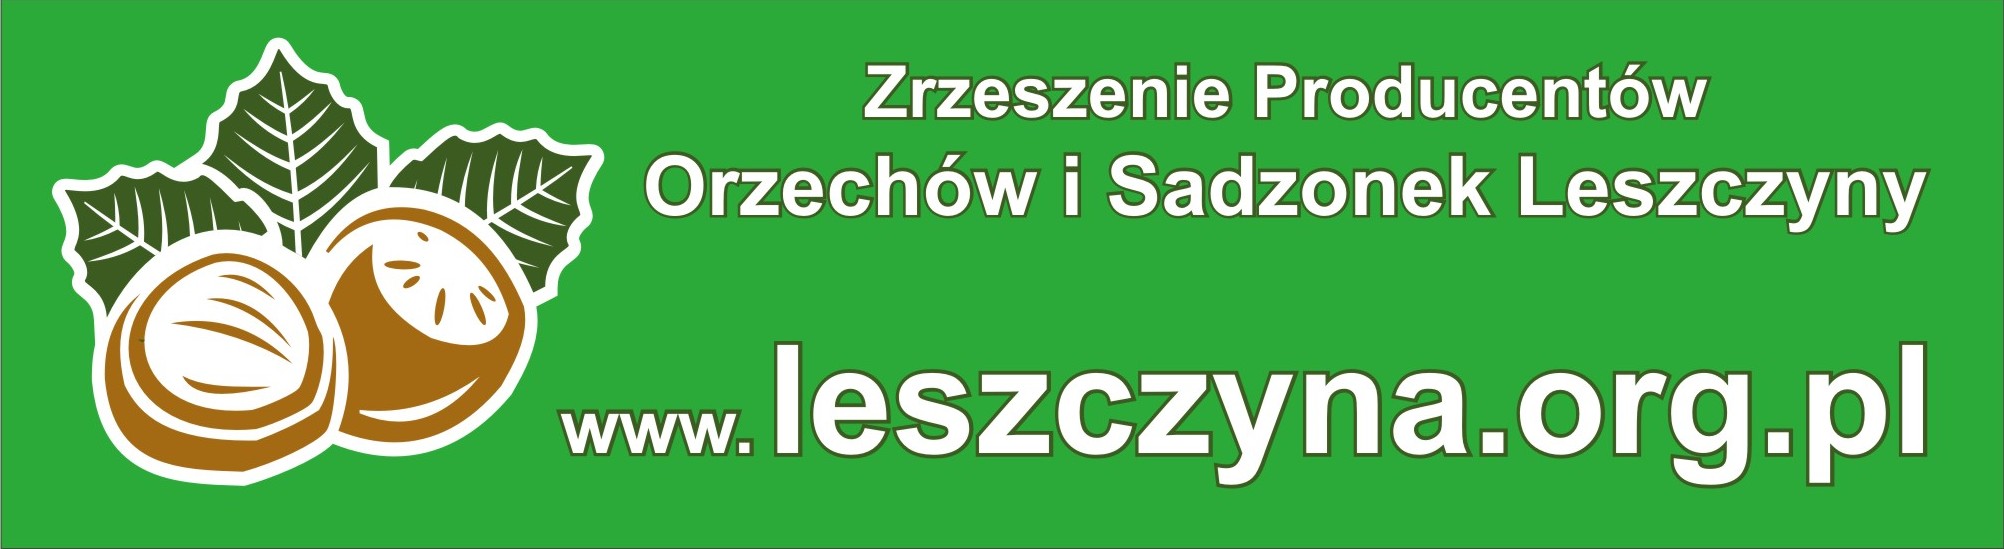 Zrzeszenie Producentów Orzechów Laskowych i Sadzonek Leszczyny w Lublinie zs. w Końskowoli